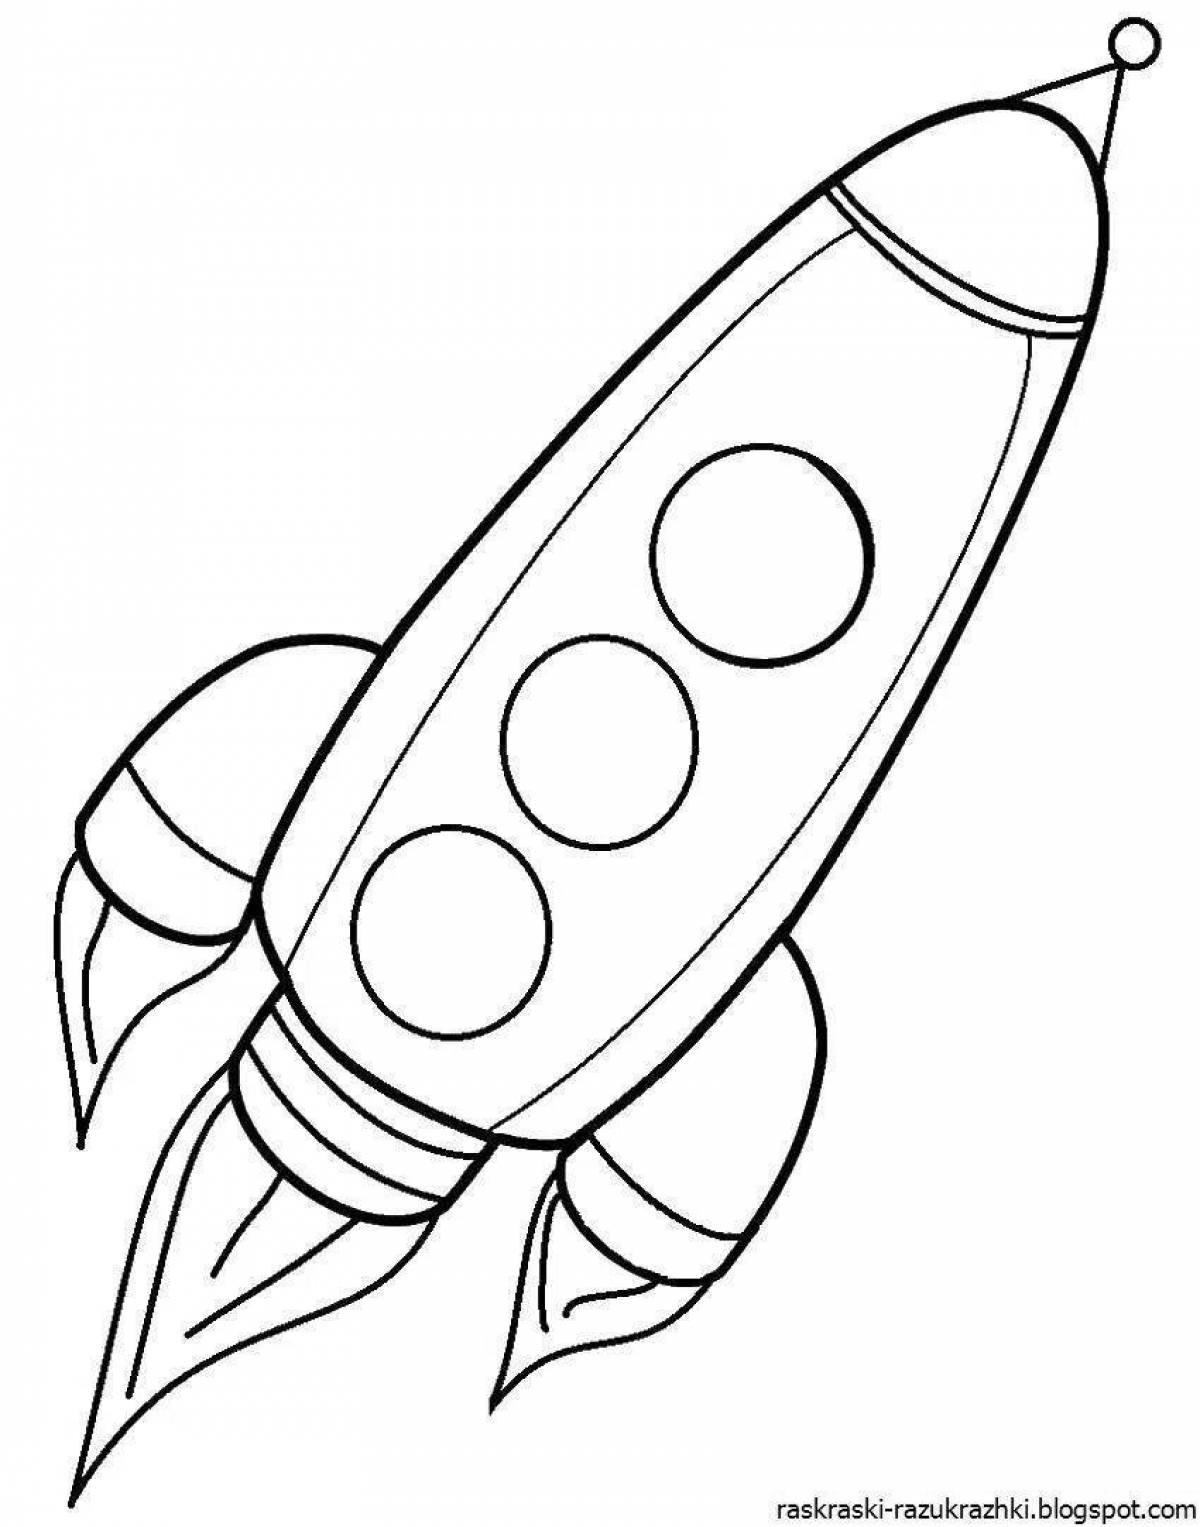 Чудесная ракета-раскраска для детей 5-6 лет